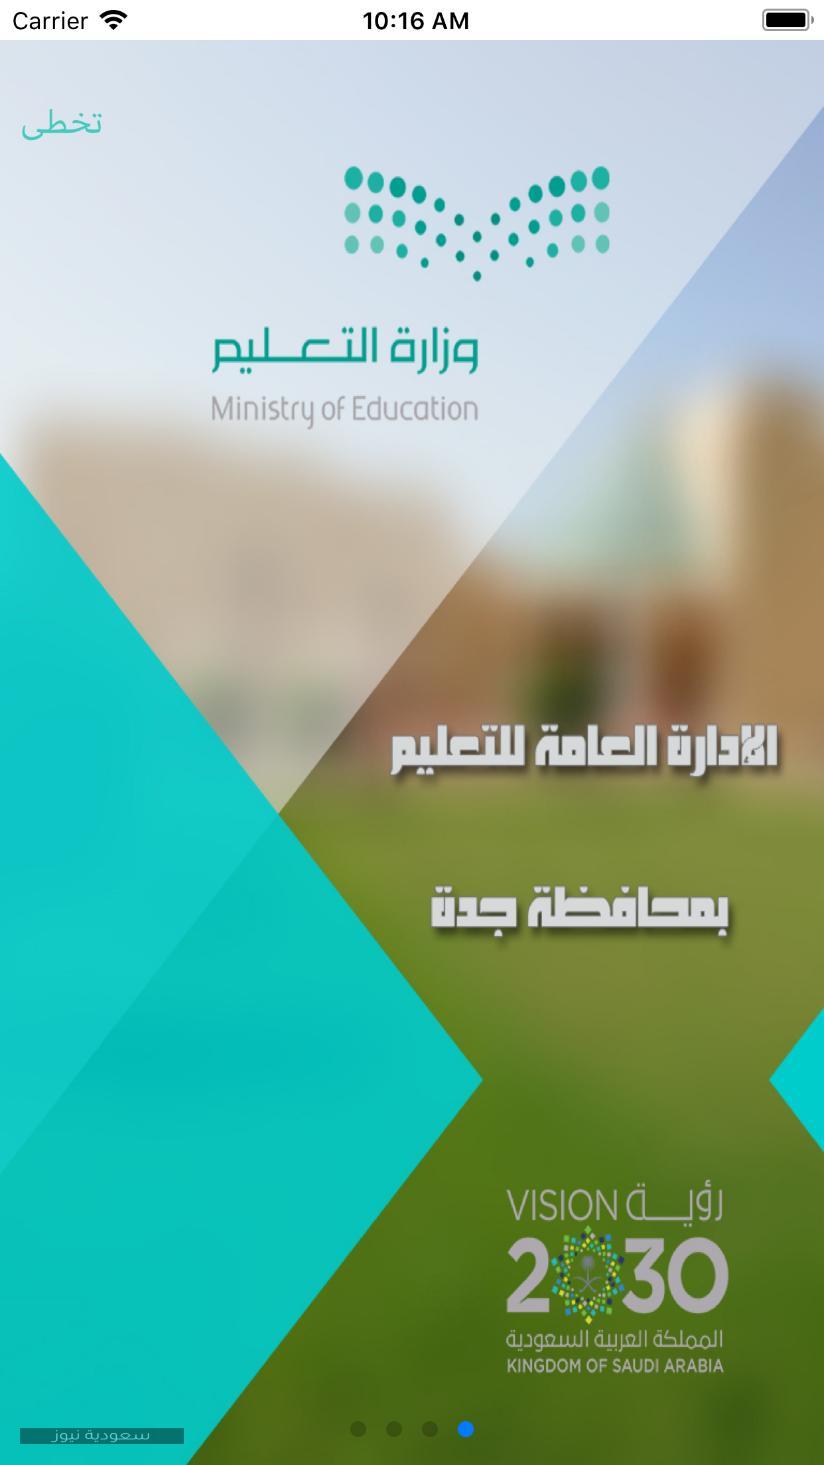 بوابة جدة التعليمية وقائمة بالإدارات ومكاتب التعليم والخدمات الإلكترونية التي تقدمها البوابة سعودية نيوز